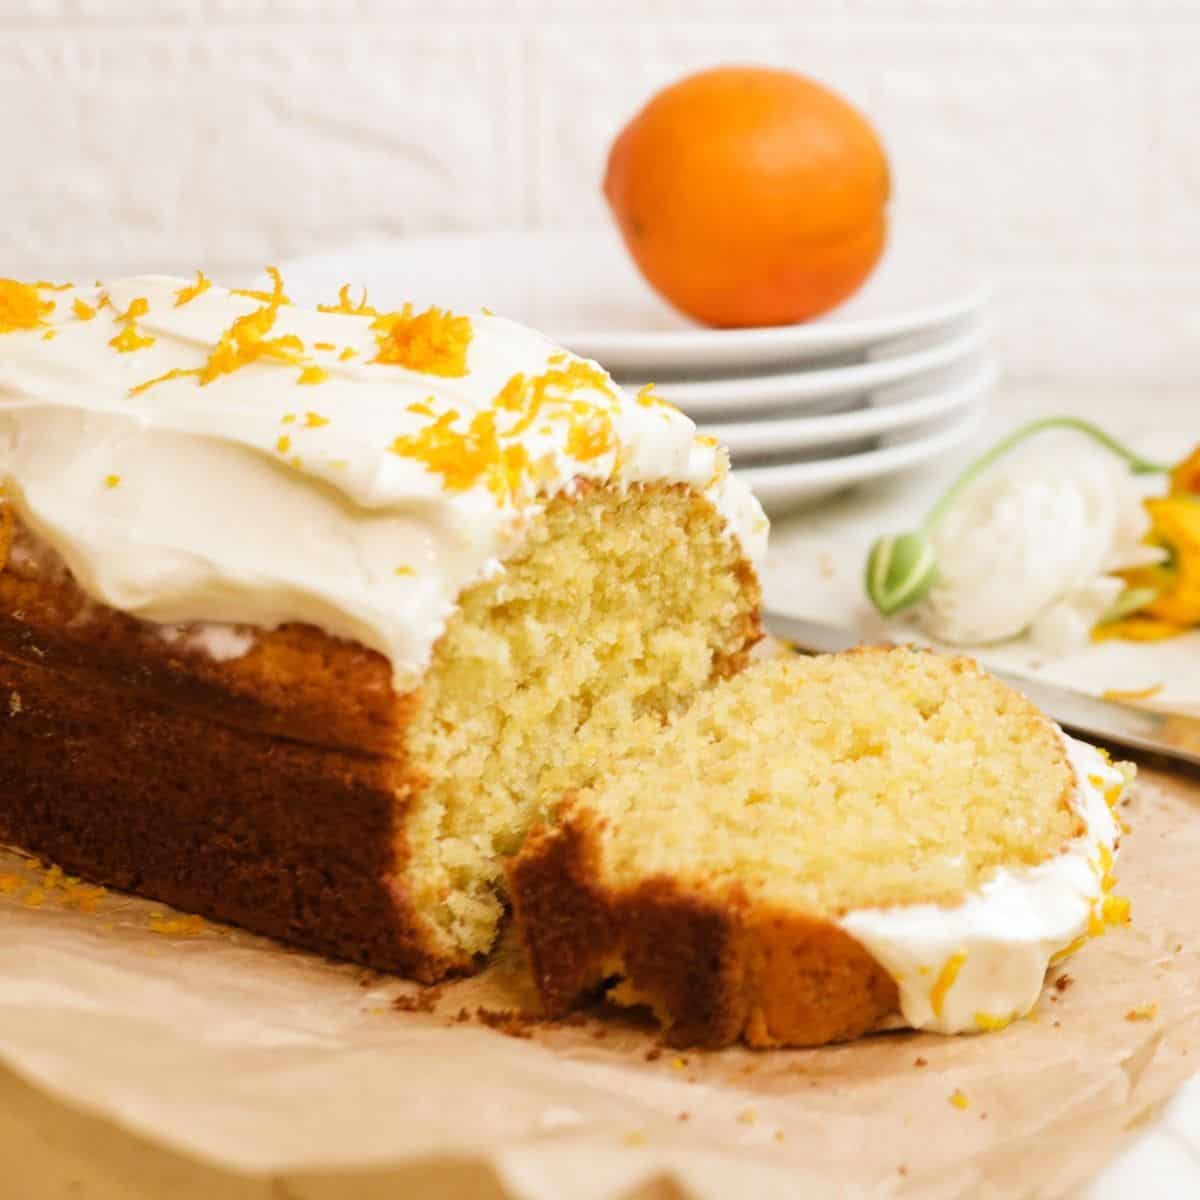 Orange Dreamsicle Cake - Plowing Through Life